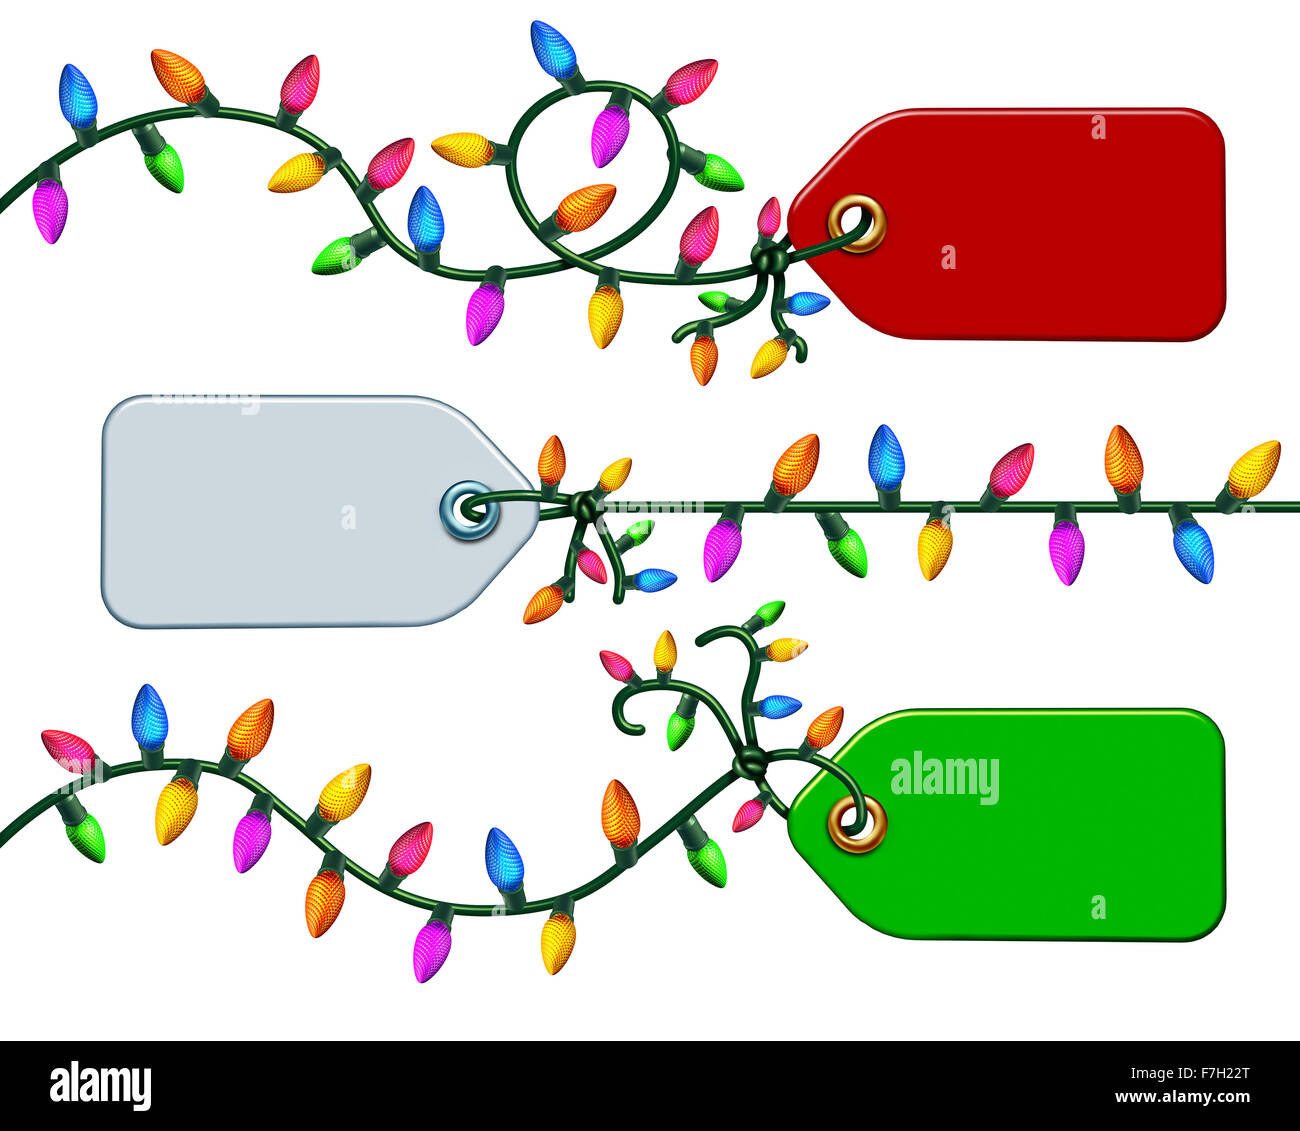 Urlaub Preisschild Symbol Gruppe Grafikelement isoliert auf einem weißen Hintergrund auf Seil mit elektrischer Weihnachtsbeleuchtung als festliche Rabatt Label Symbol gebunden. Stockfoto